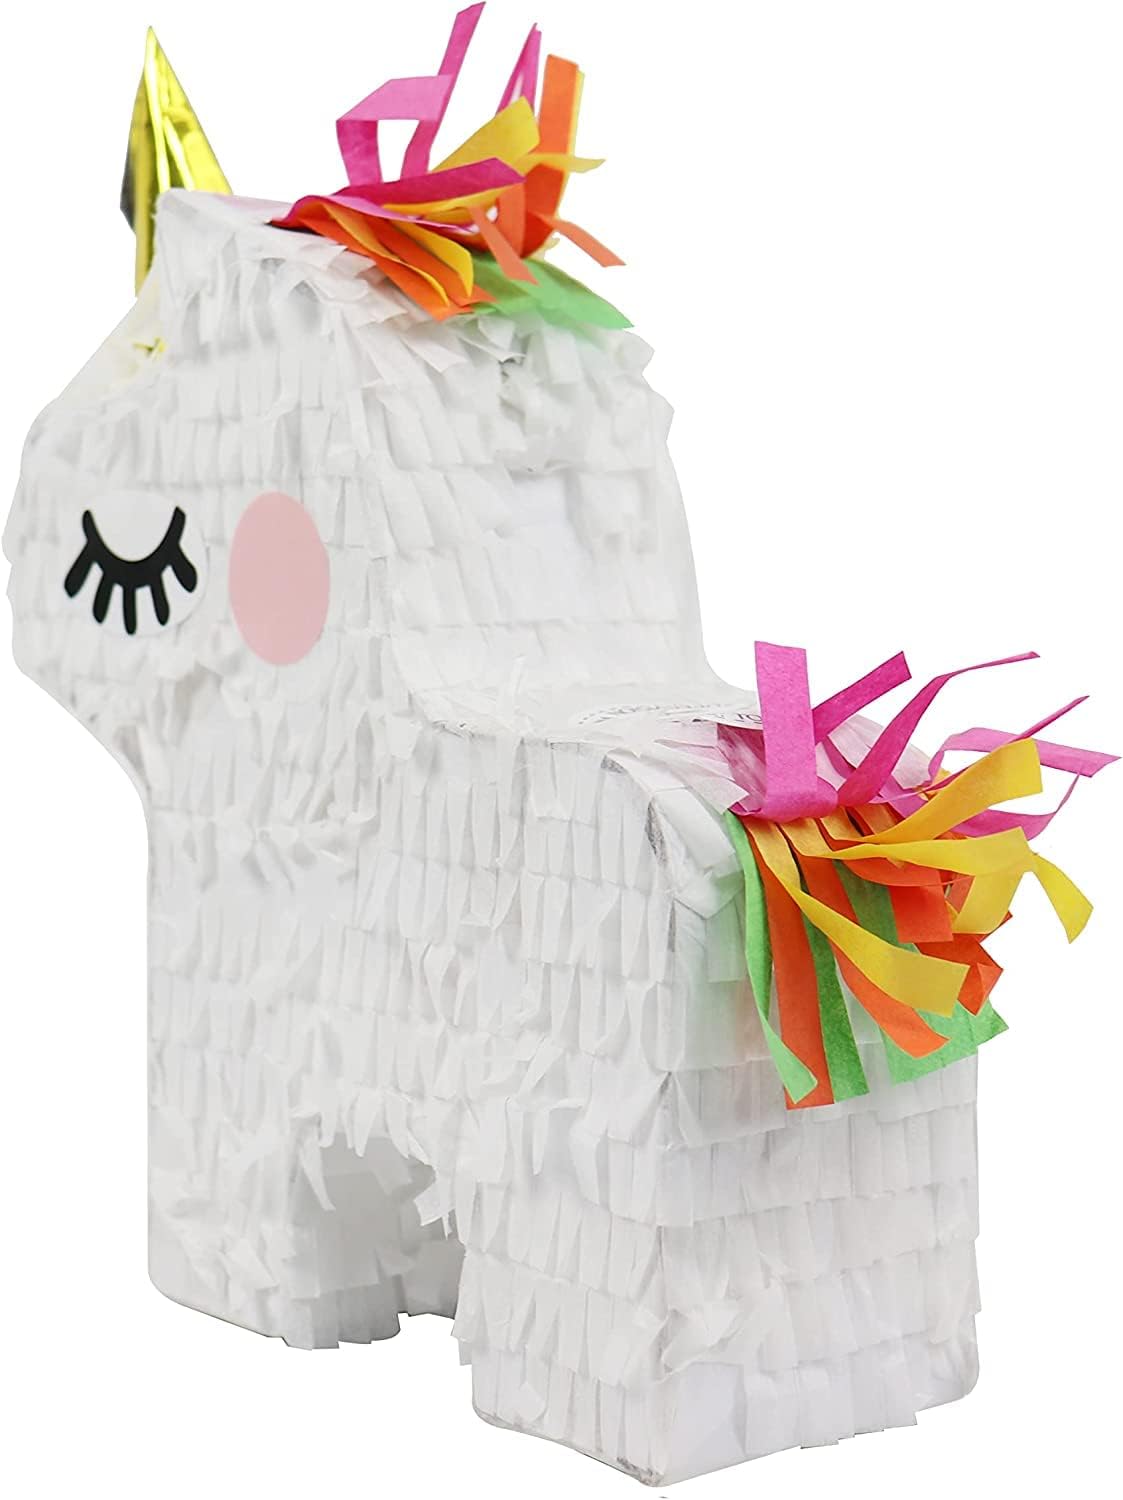 GIFTEXPRESS Mini piñatas de unicornio (8"x6") 